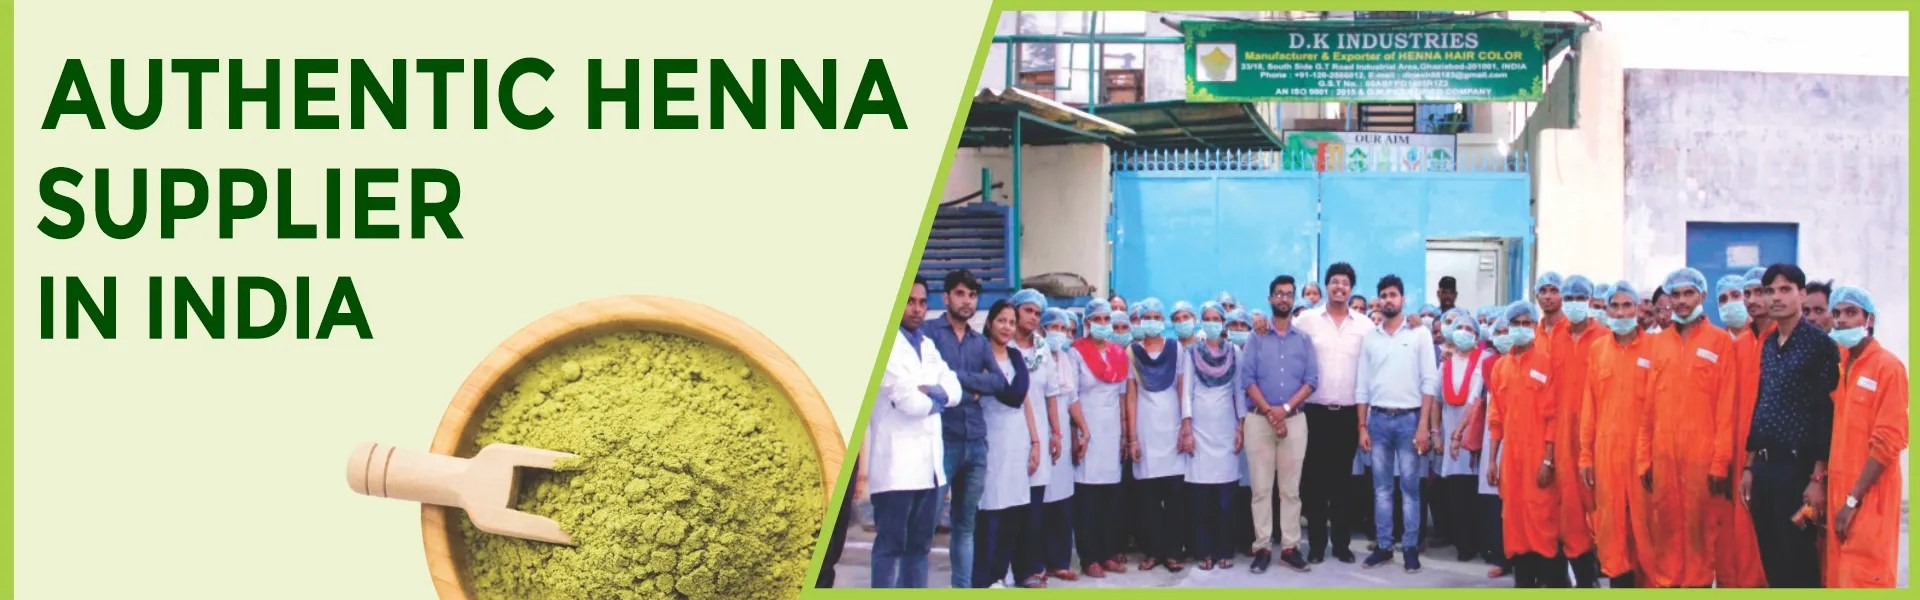 Henna Supplier in India - www.dkihenna.com